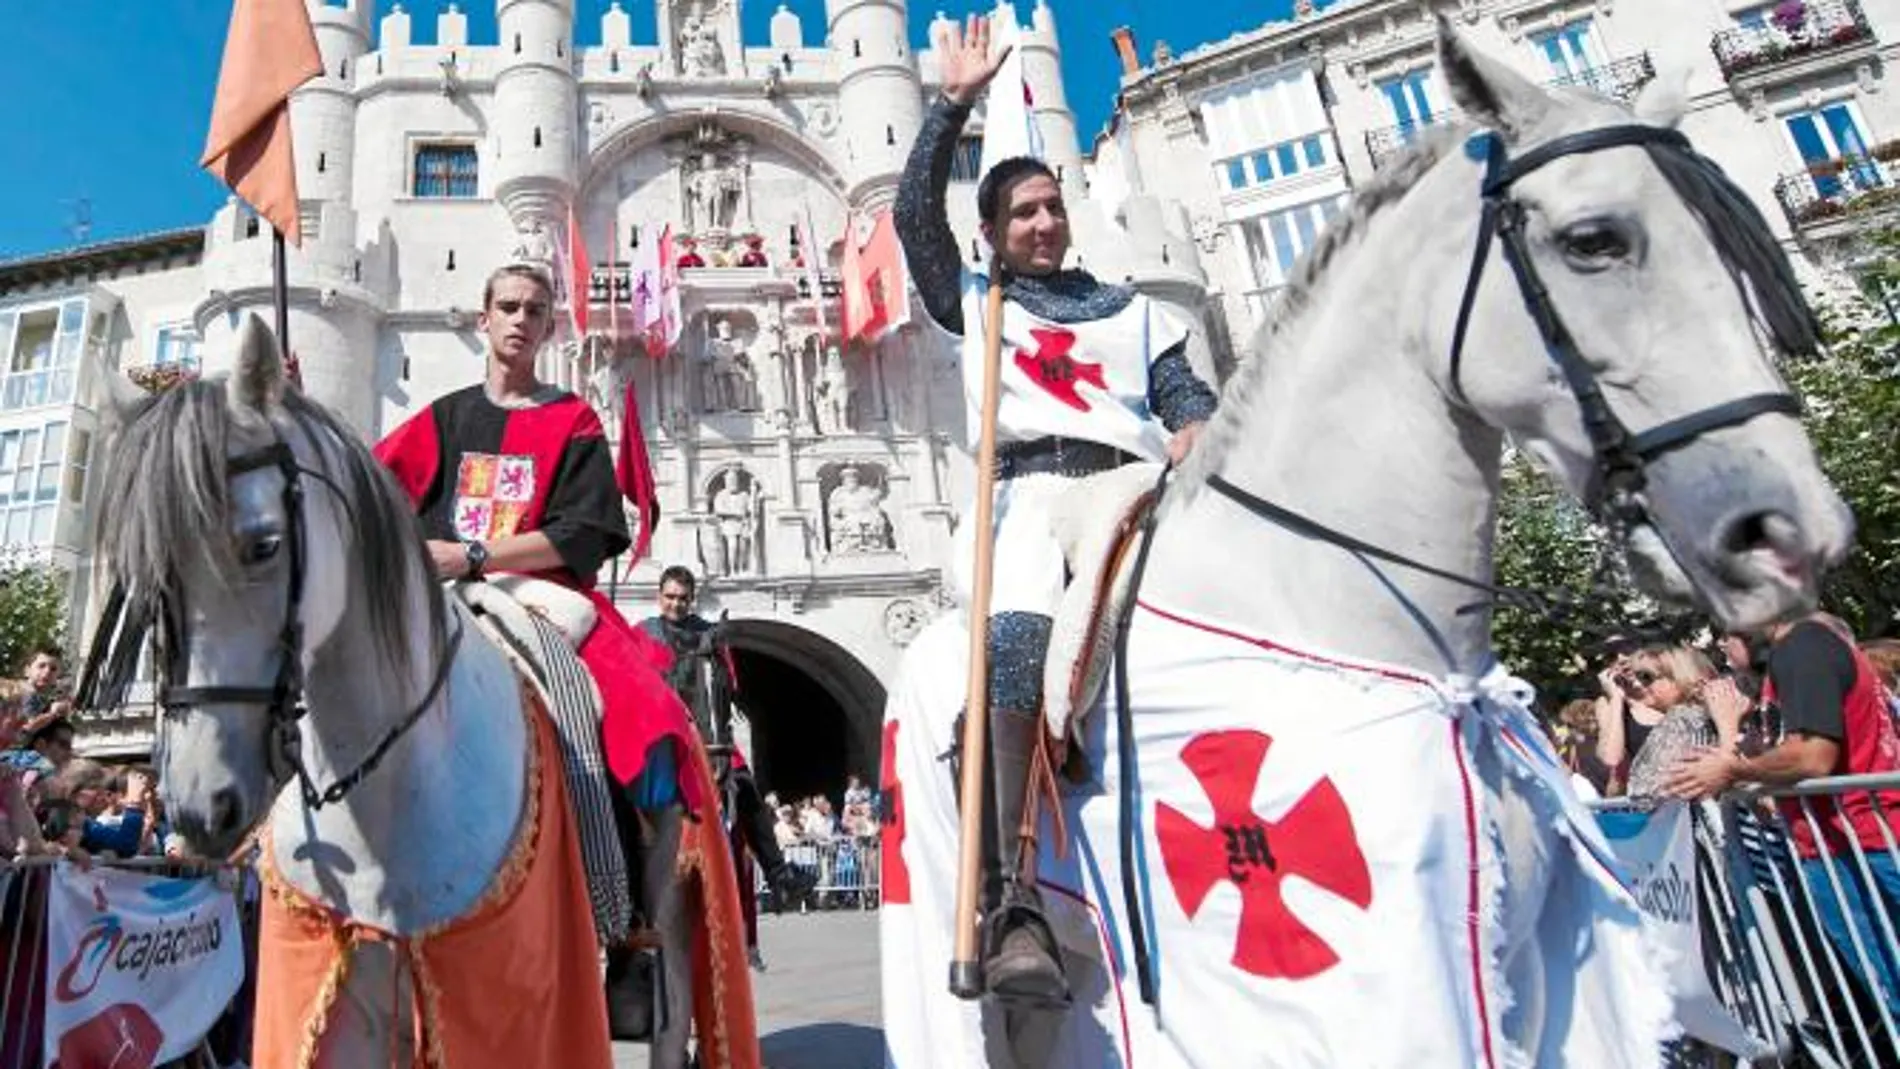 Actuaciones teatrales, justas medievales. torneos entre caballeros o un mercado medieval son algunas de las actividades que se pueden ver este fin de semana en Burgos.